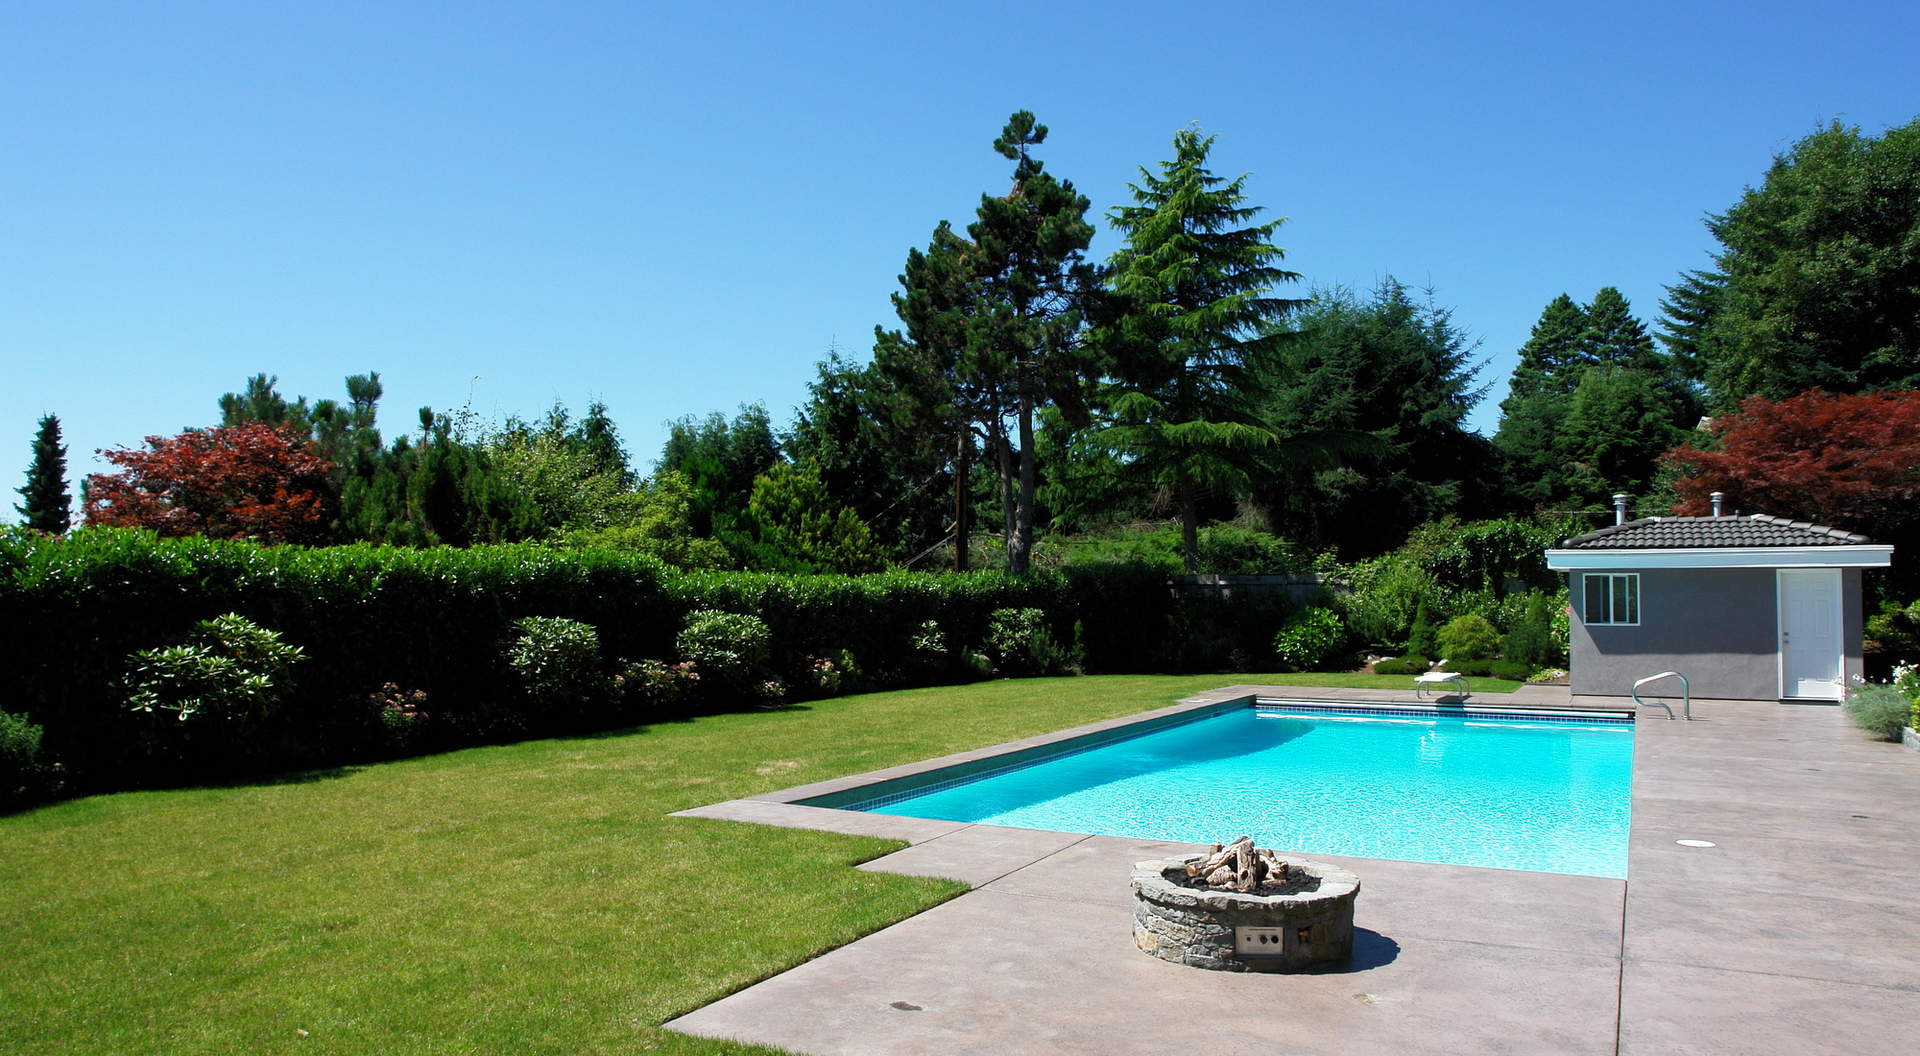 Espectacular planta de jardin y espumoso piscina al aire libre